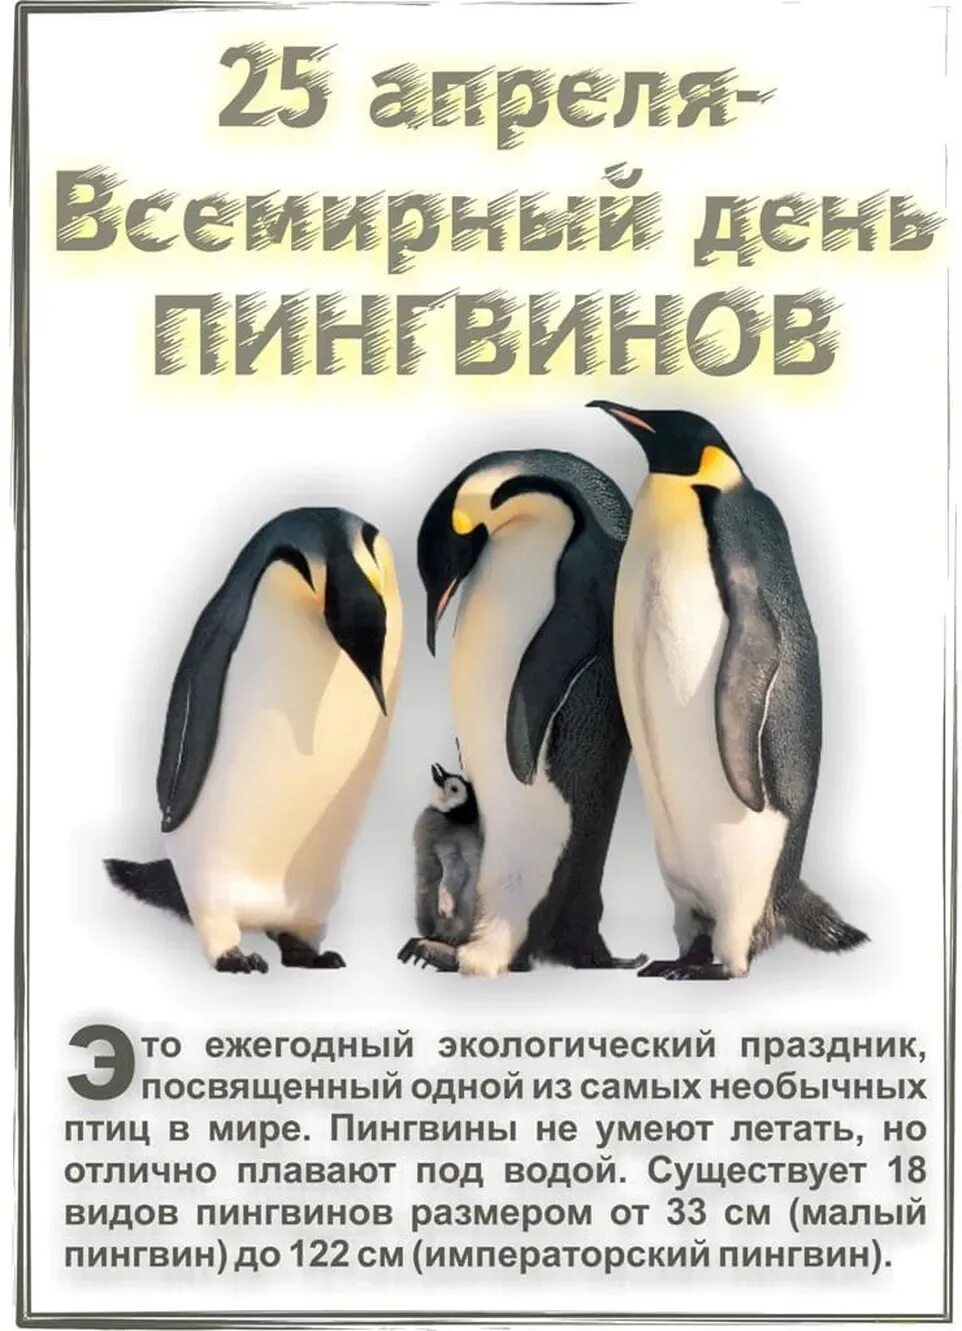 25 апреля есть праздник. Всемирный день пингвинов 25 апреля. Всемныйдень пингвинов. Всемирныйсдень пингвинов. Открытка с днем пингвина.